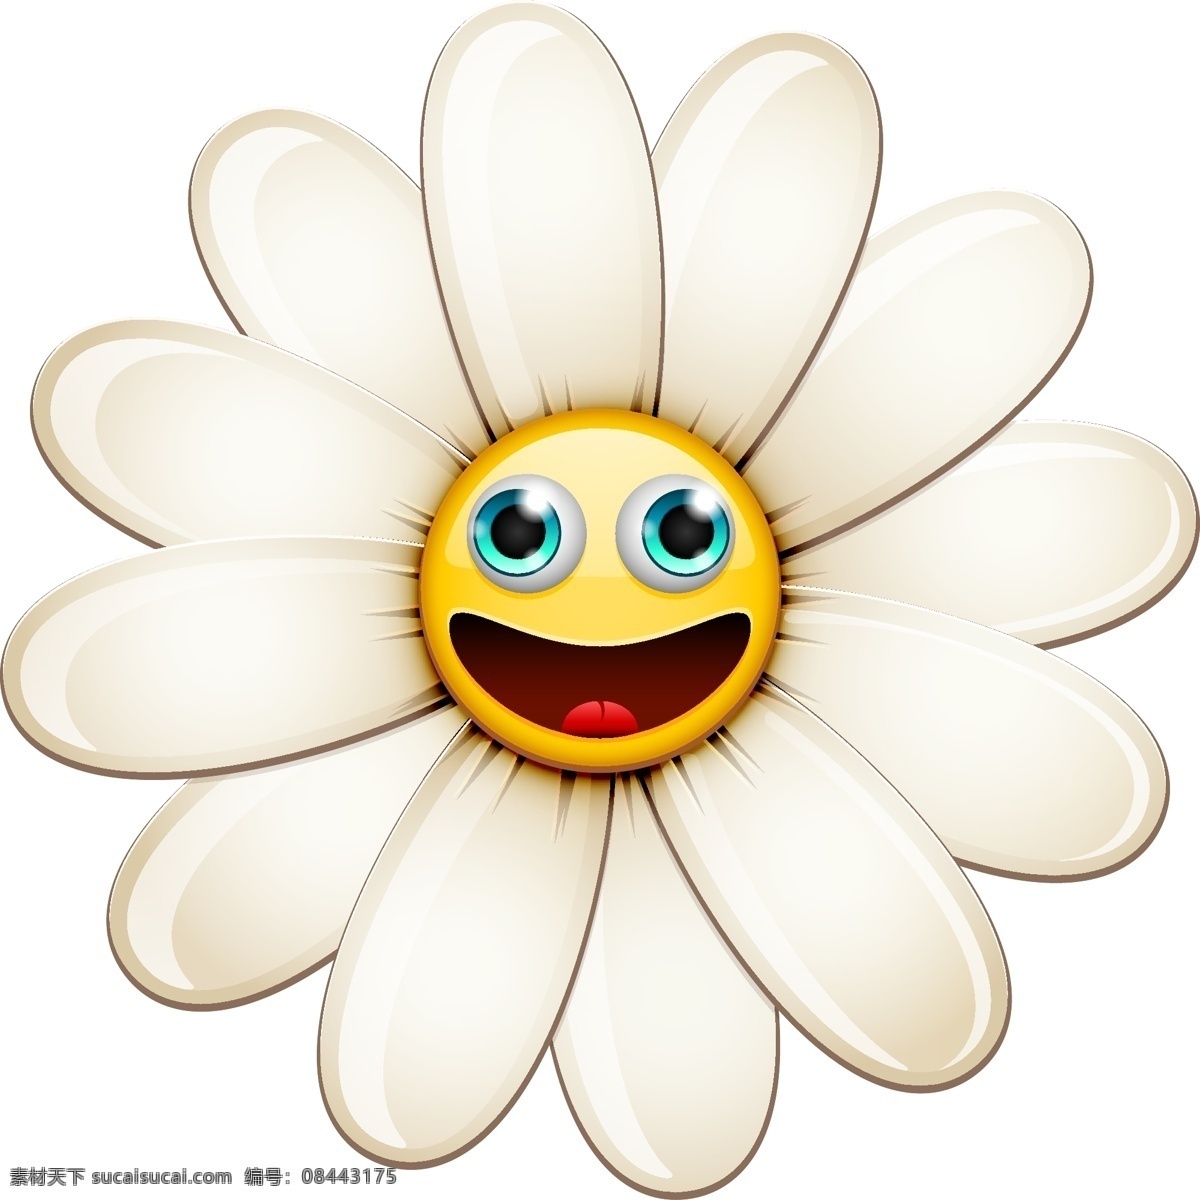 幸福 脸 说明 花 图标 自然 春天 快乐 植物 插图 菊花 春天的花朵 幸福的脸 花的图标 微笑 白色